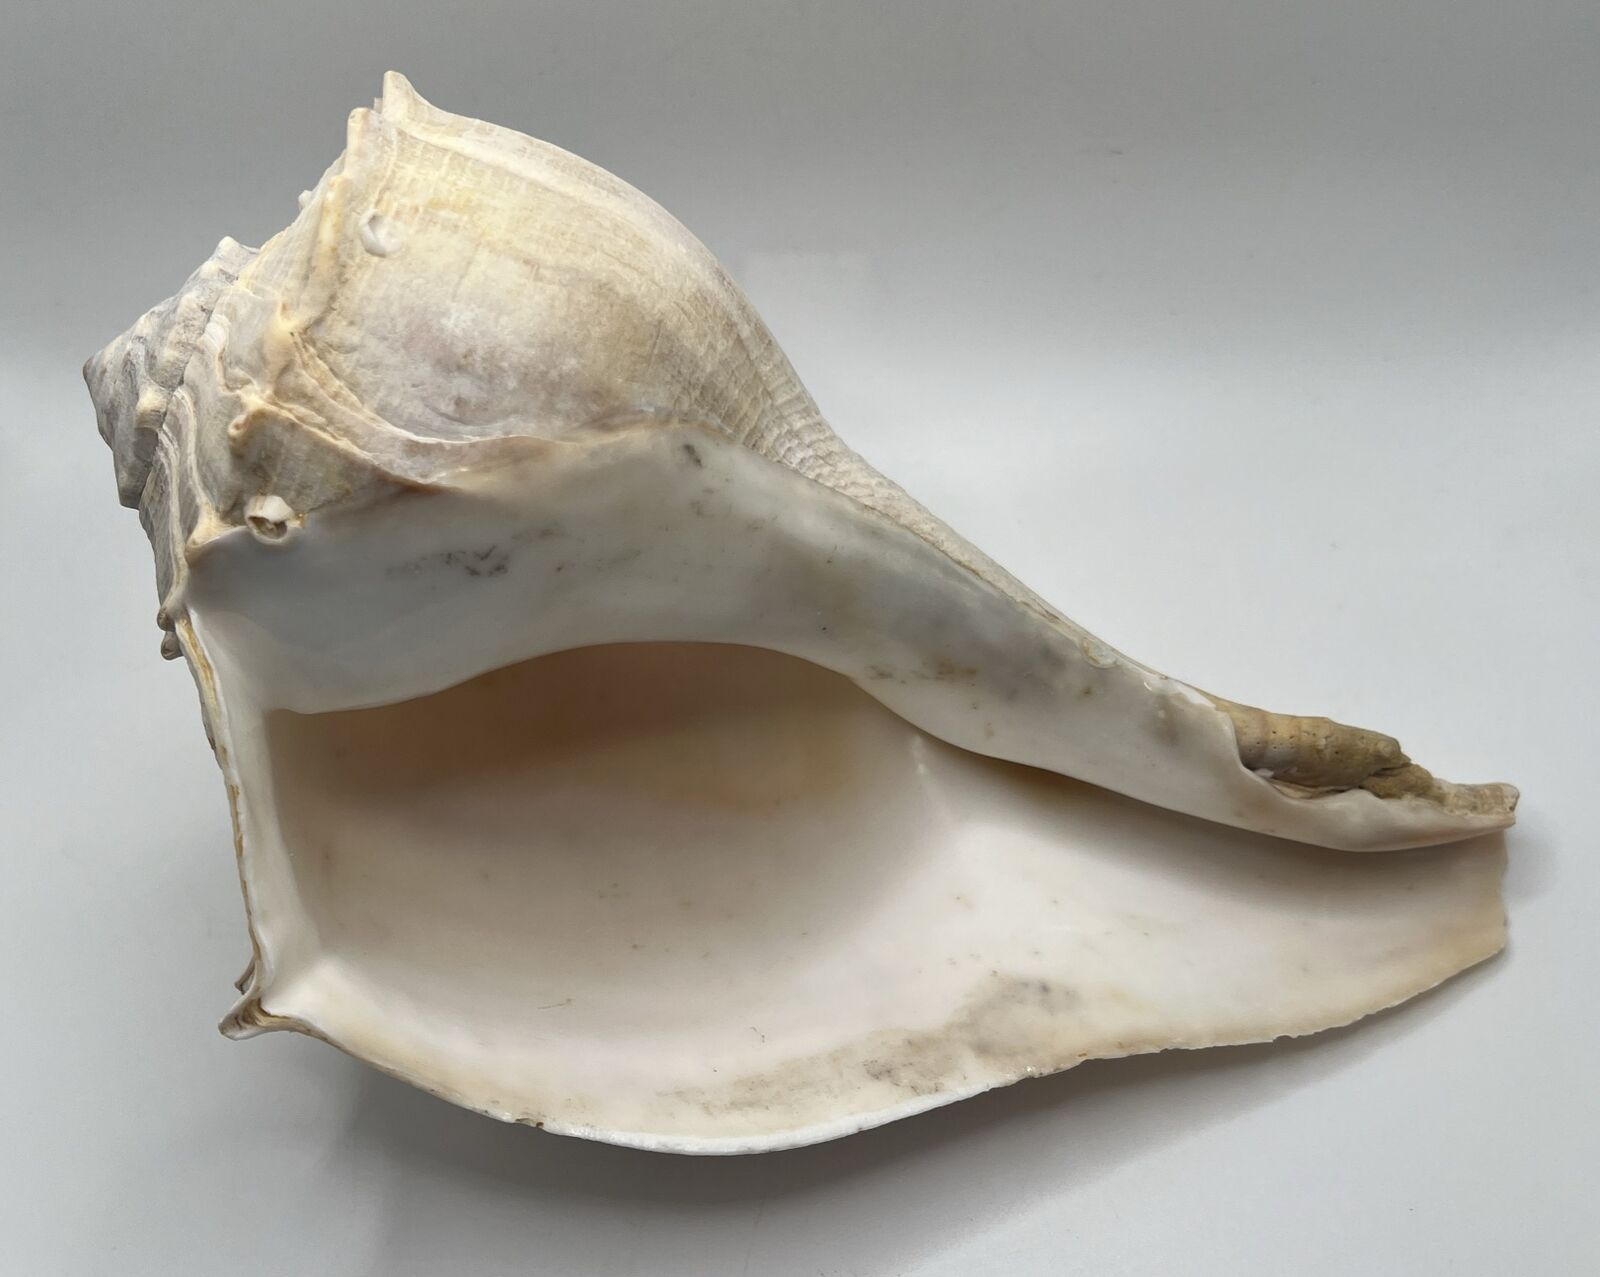 Vintage Lightning Whelk Seashell Florida Sinistrofulgur Perversum 9” Left Handed